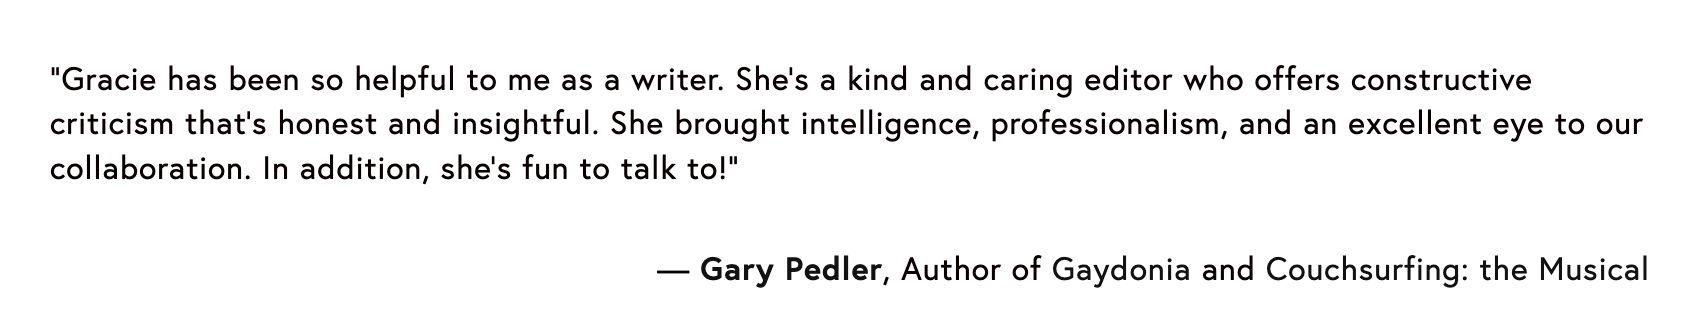 Gary Pedler Testimonial.png